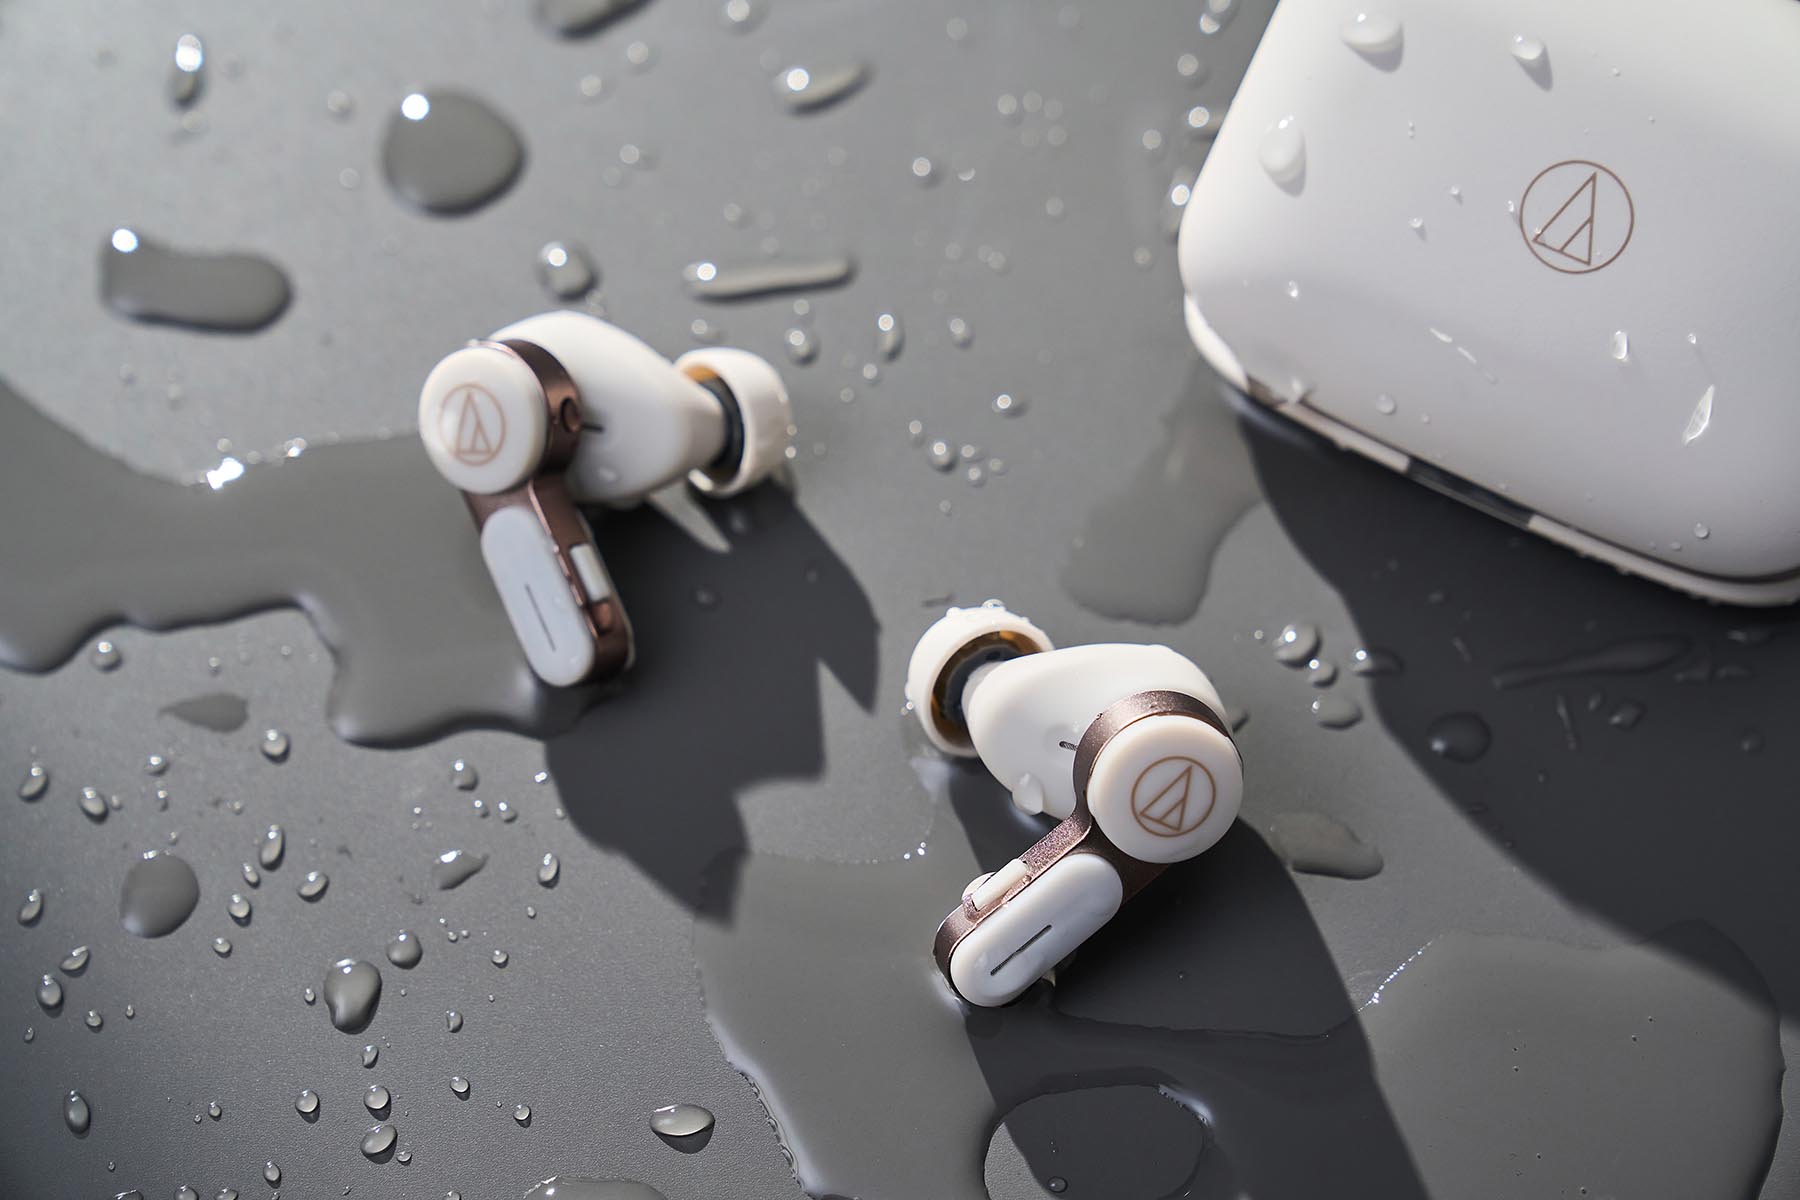 防水性能方面，ATH-TWX7 具備 IPX4 生活防水機能，從事低強度運動或偶遇小雨都不必擔心損壞耳機。